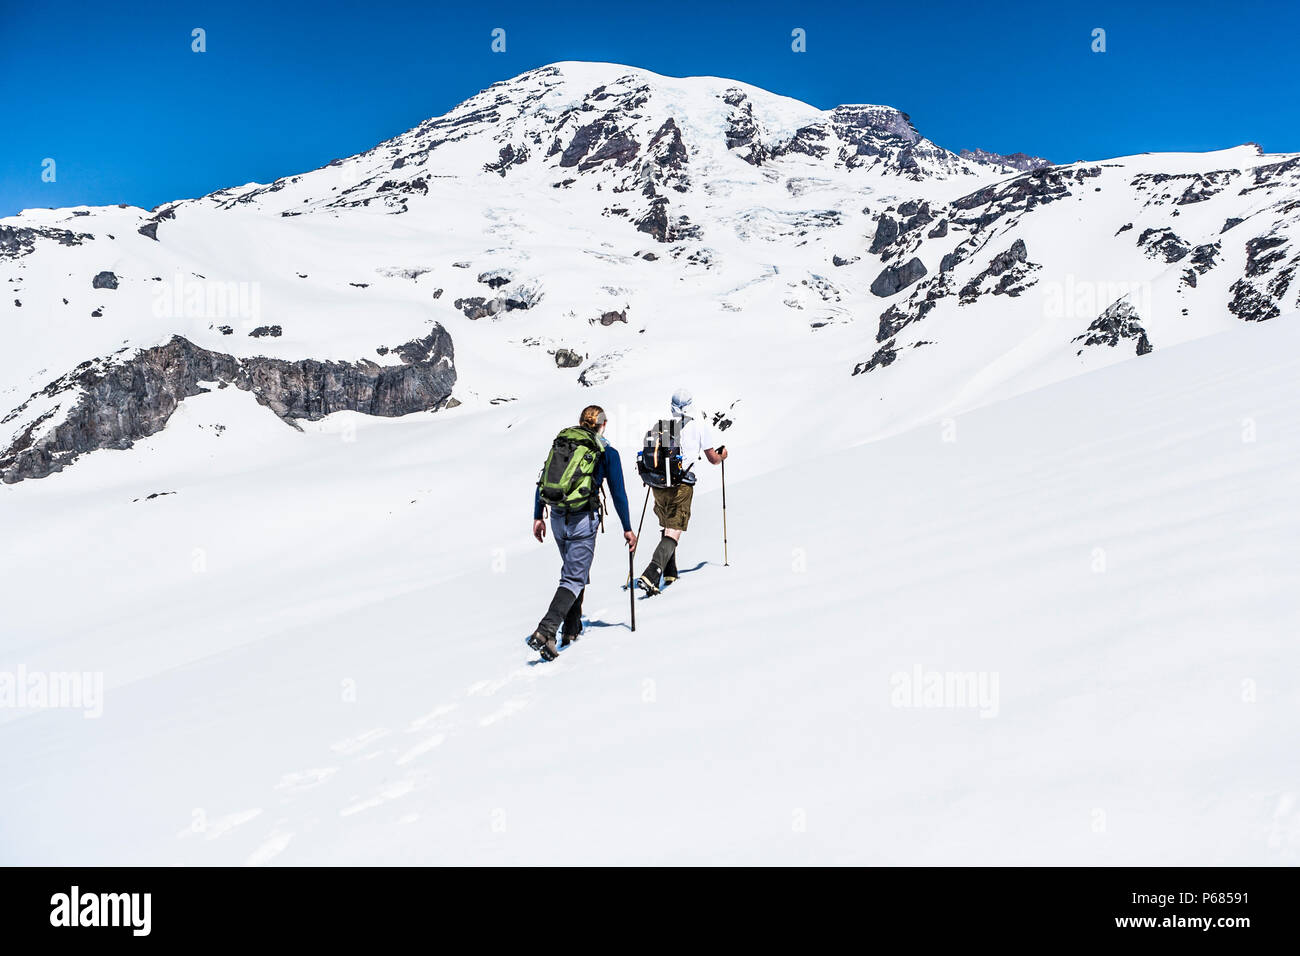 Les gens de randonnée du Muir champ de neige sur le côté sud de Mt. Rainier, Mt. Rainier National Park, Washington, United States. Banque D'Images